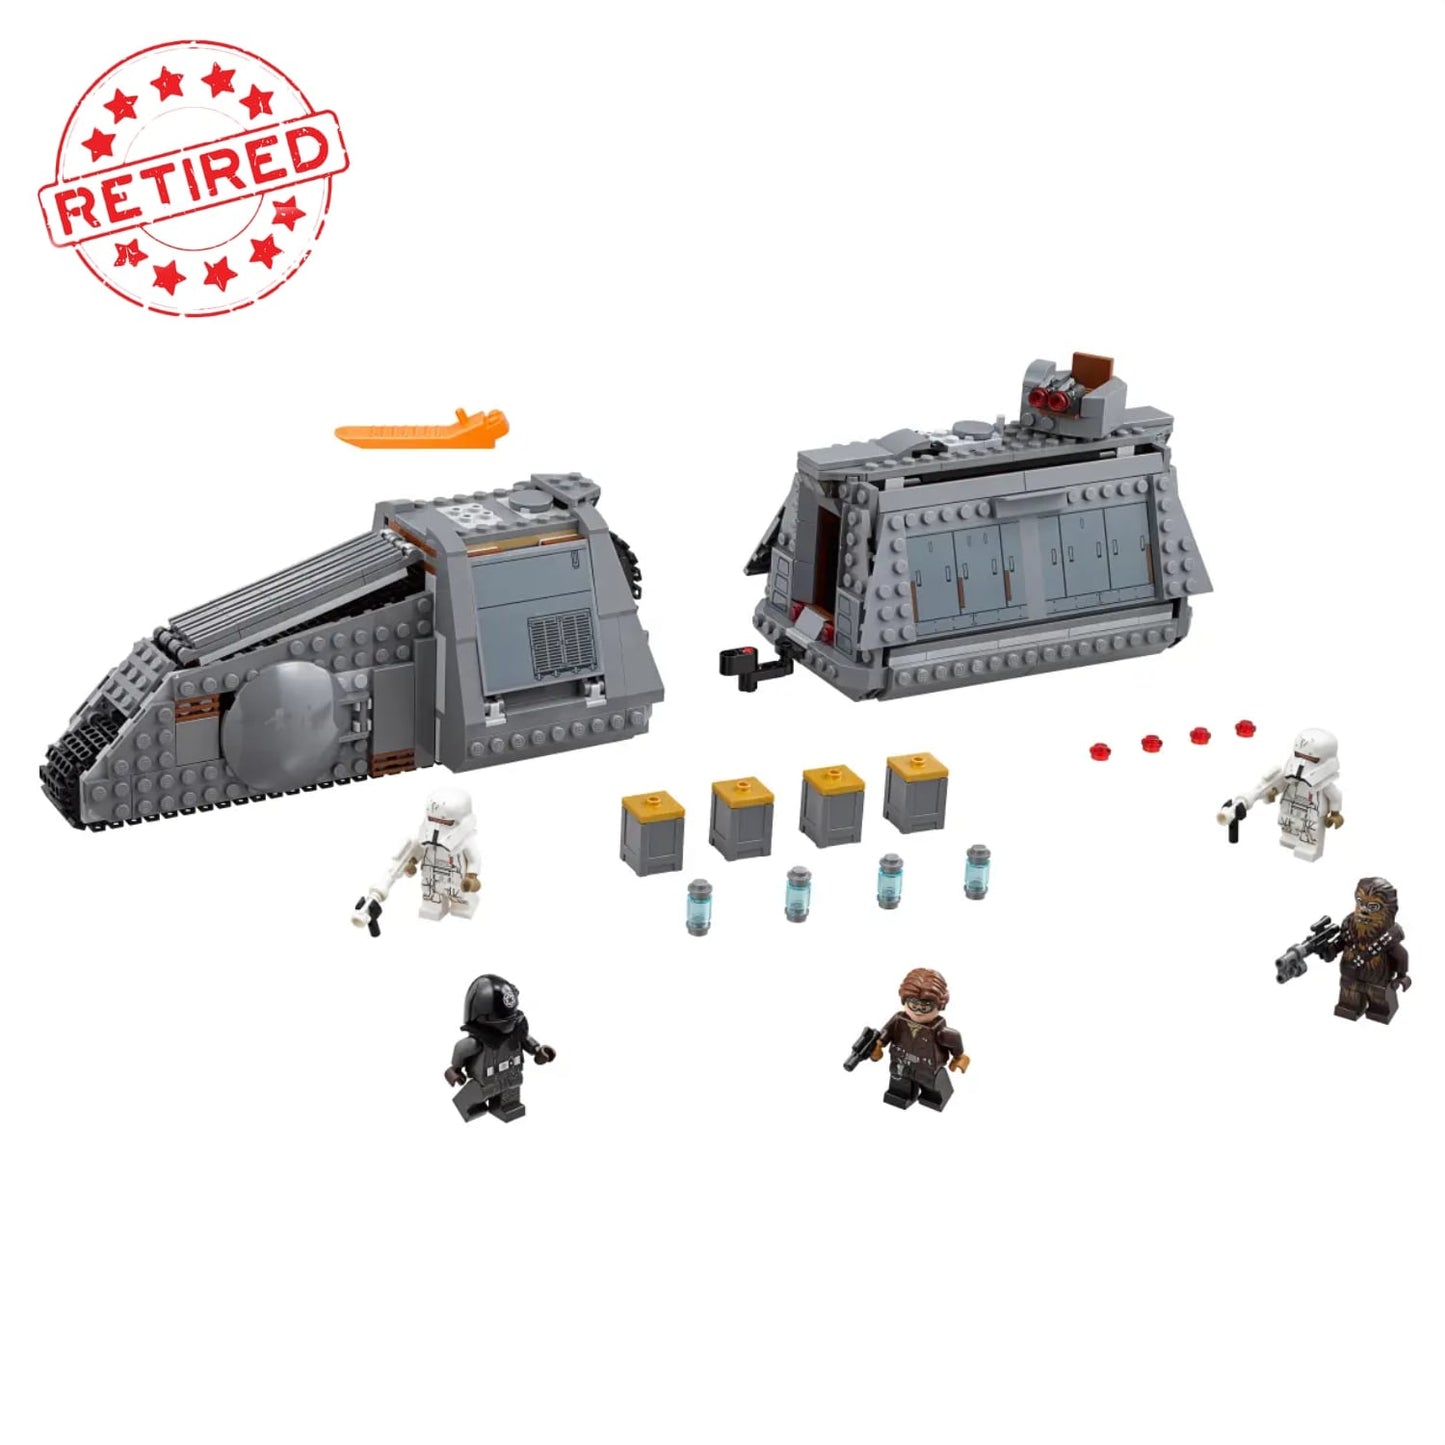 Lego 75217 Star Wars Imperial Conveyex Transport